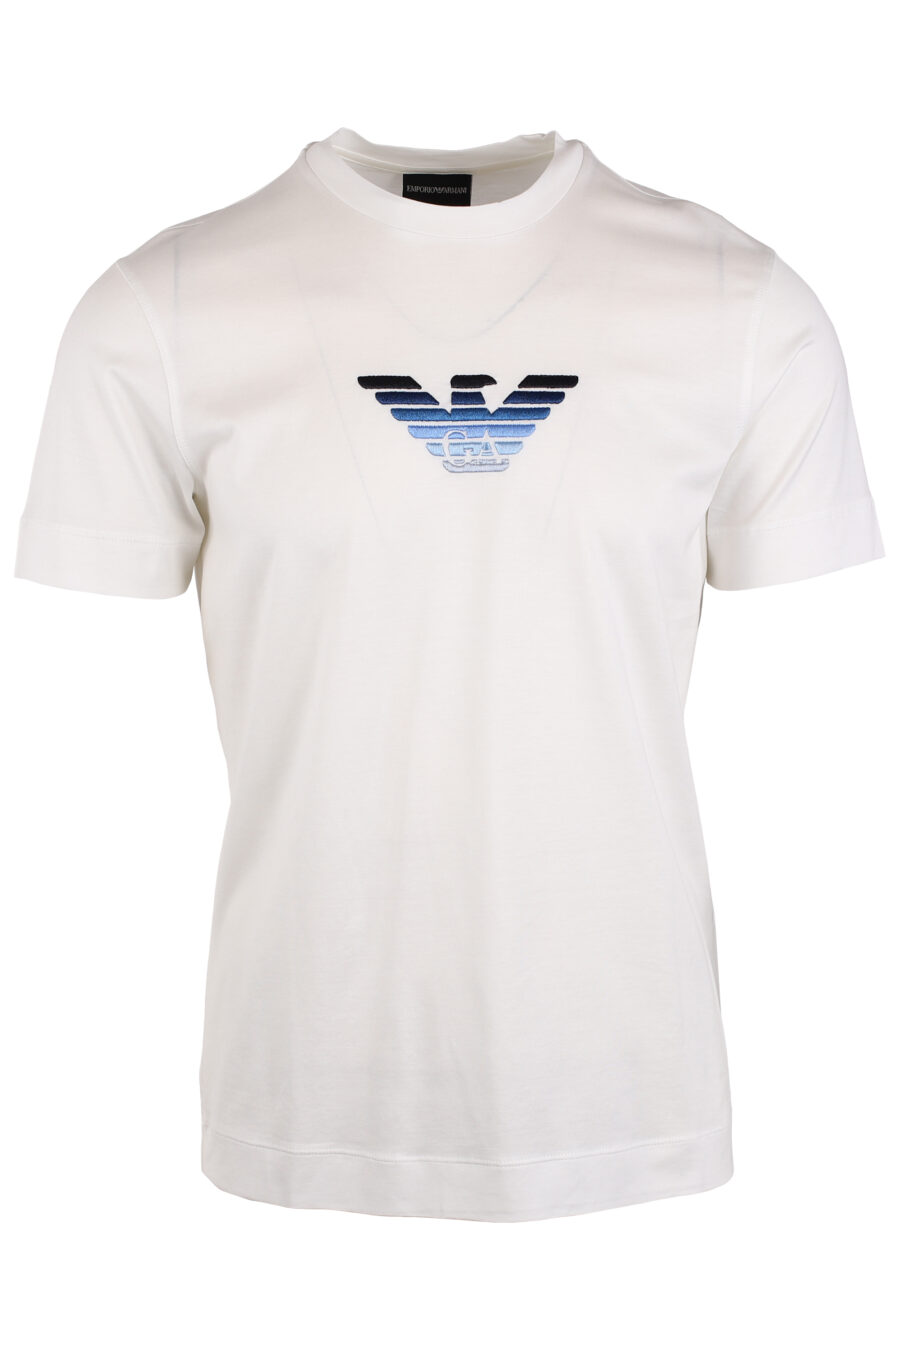 T-shirt branca com minilogo de águia em degradé azul - IMG 4054